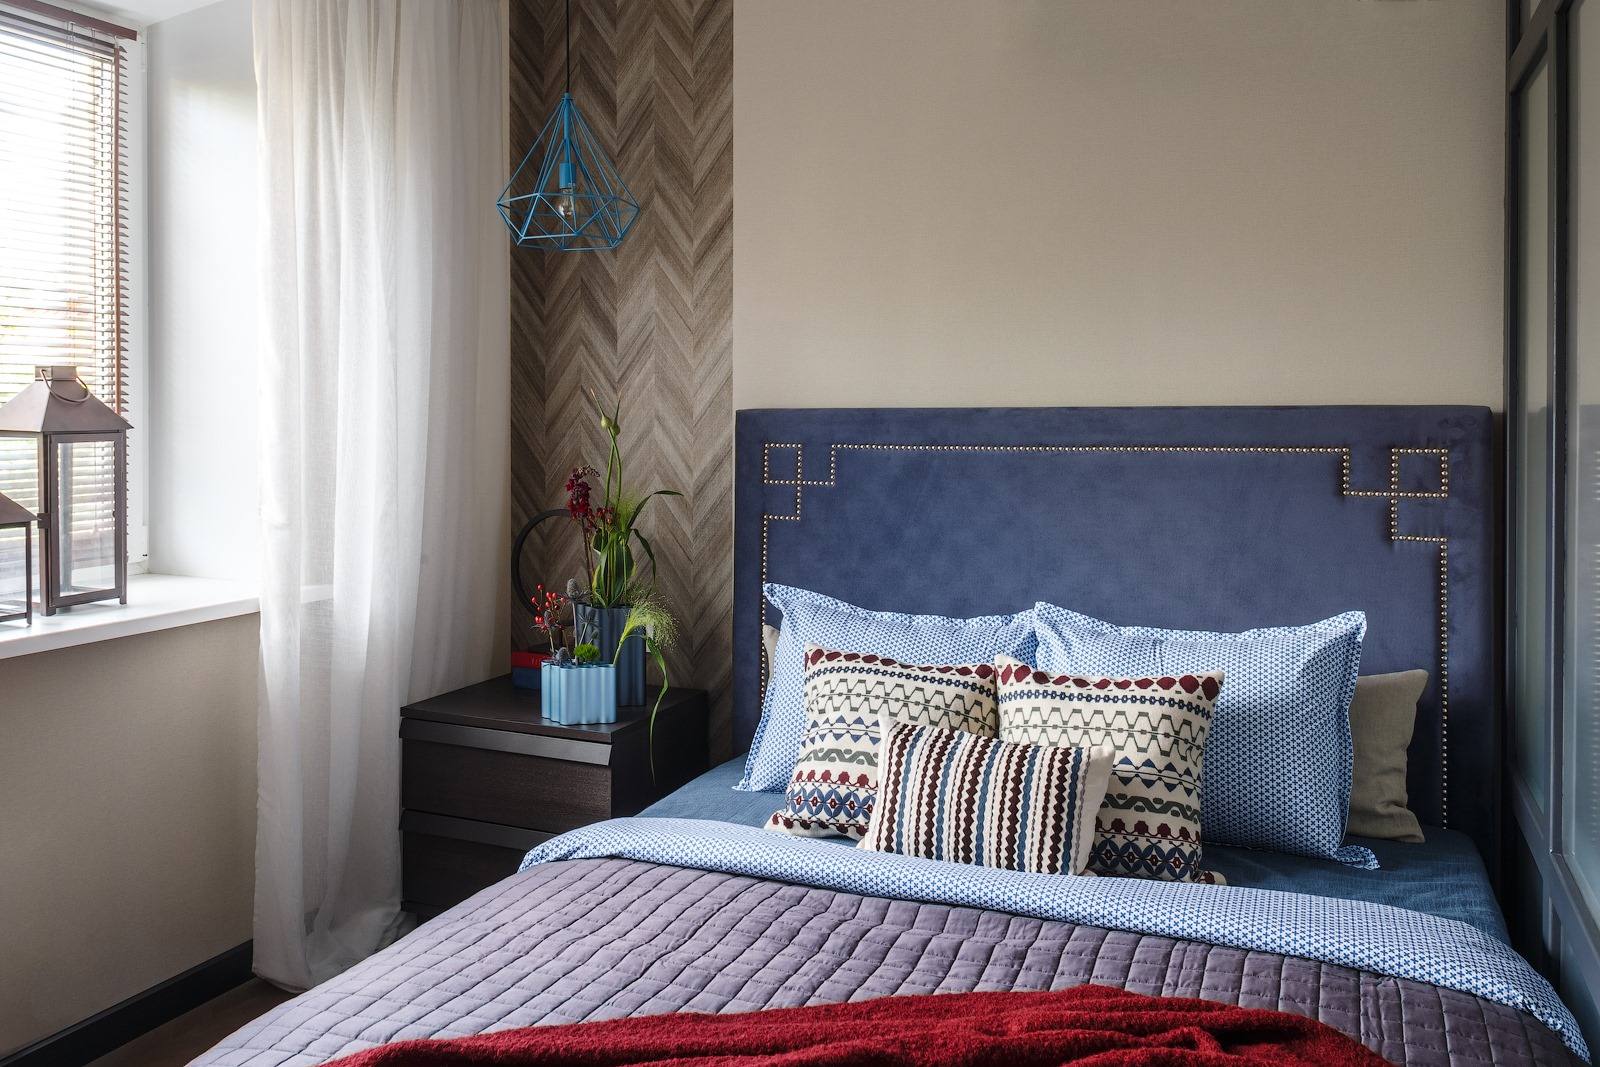 Phòng ngủ của người mẹ có thiết kế nổi bật, từ bức tường sơn màu be kết hợp gỗ hình xương cá sau táp đầu giường gỗ cho đến phần đầu giường màu xanh lam đậm, phối hợp bộ chăn ga gối dường như 'chẳng thiếu màu nào'.